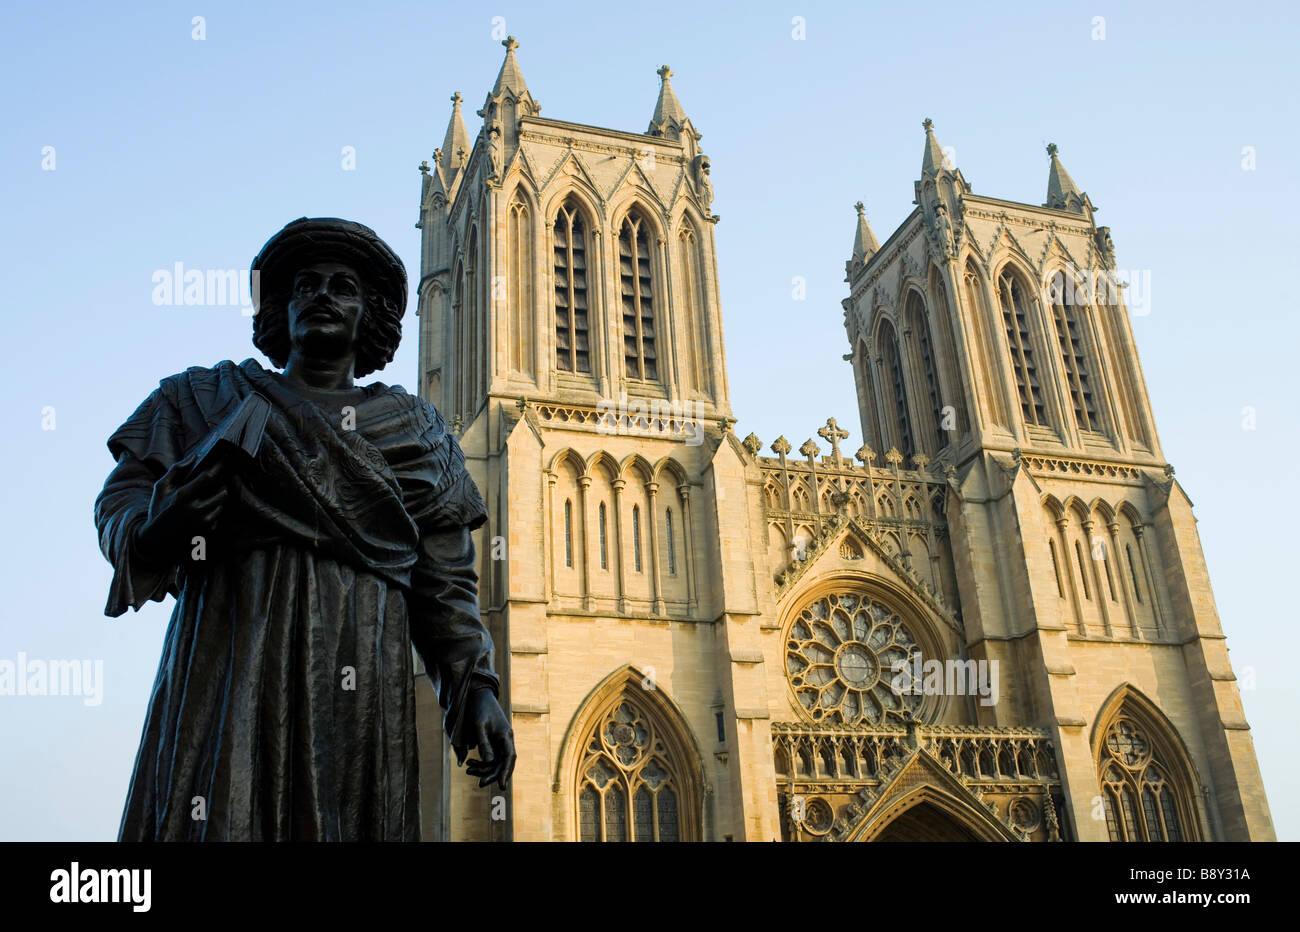 Raja Ram Mohan Roy à la statue de la cathédrale de Bristol Banque D'Images